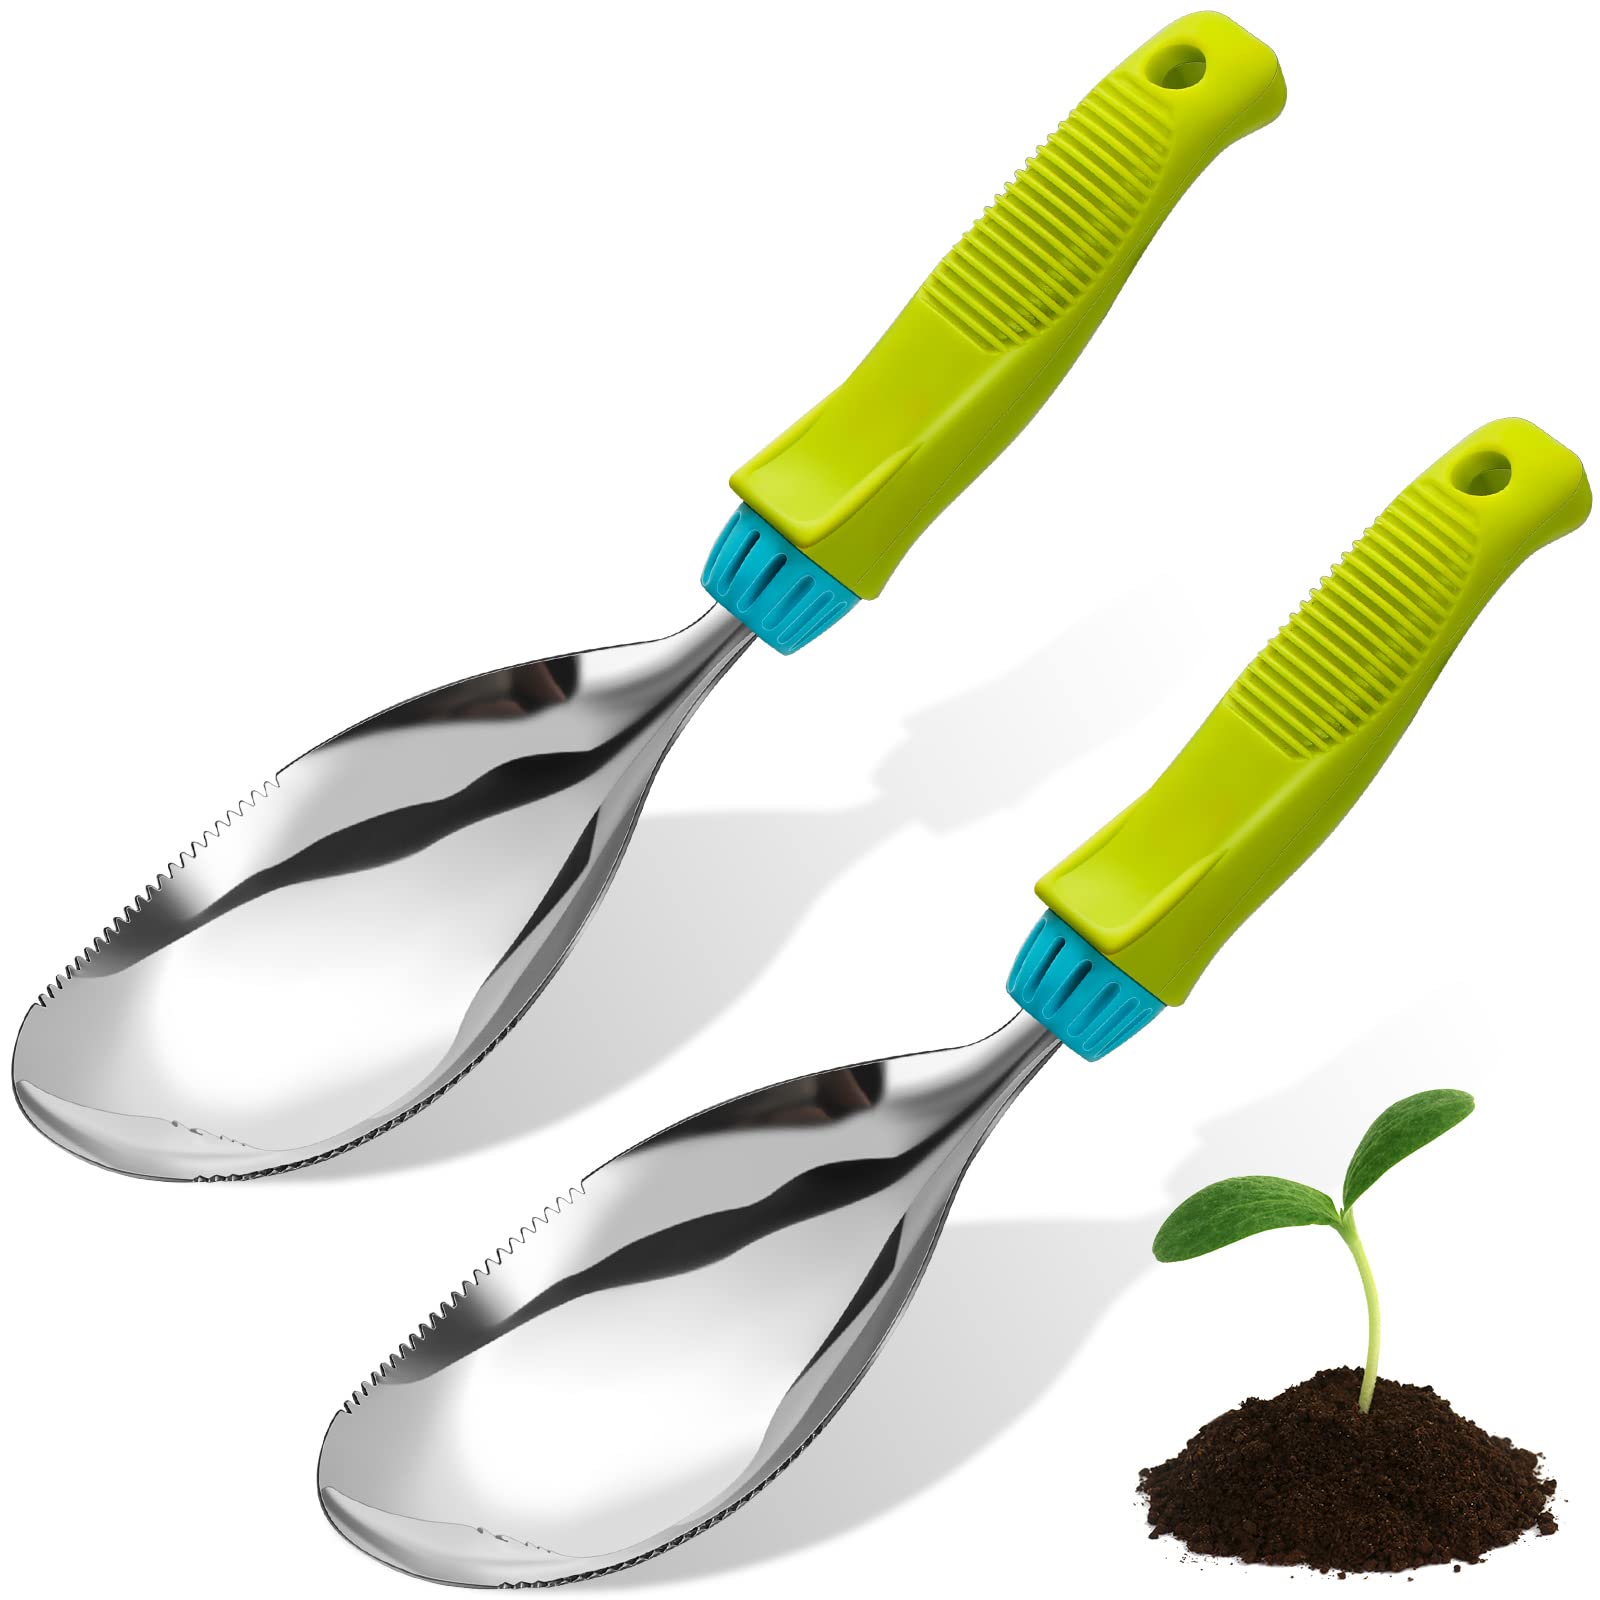 2 Pcs Soil Scoop Stainless Steel Garden Trowel Multi Use Garden Shovel Hand Shovel Gardening Hand Tools Transplanter Weeder for Soil, Fertilizer, Feed